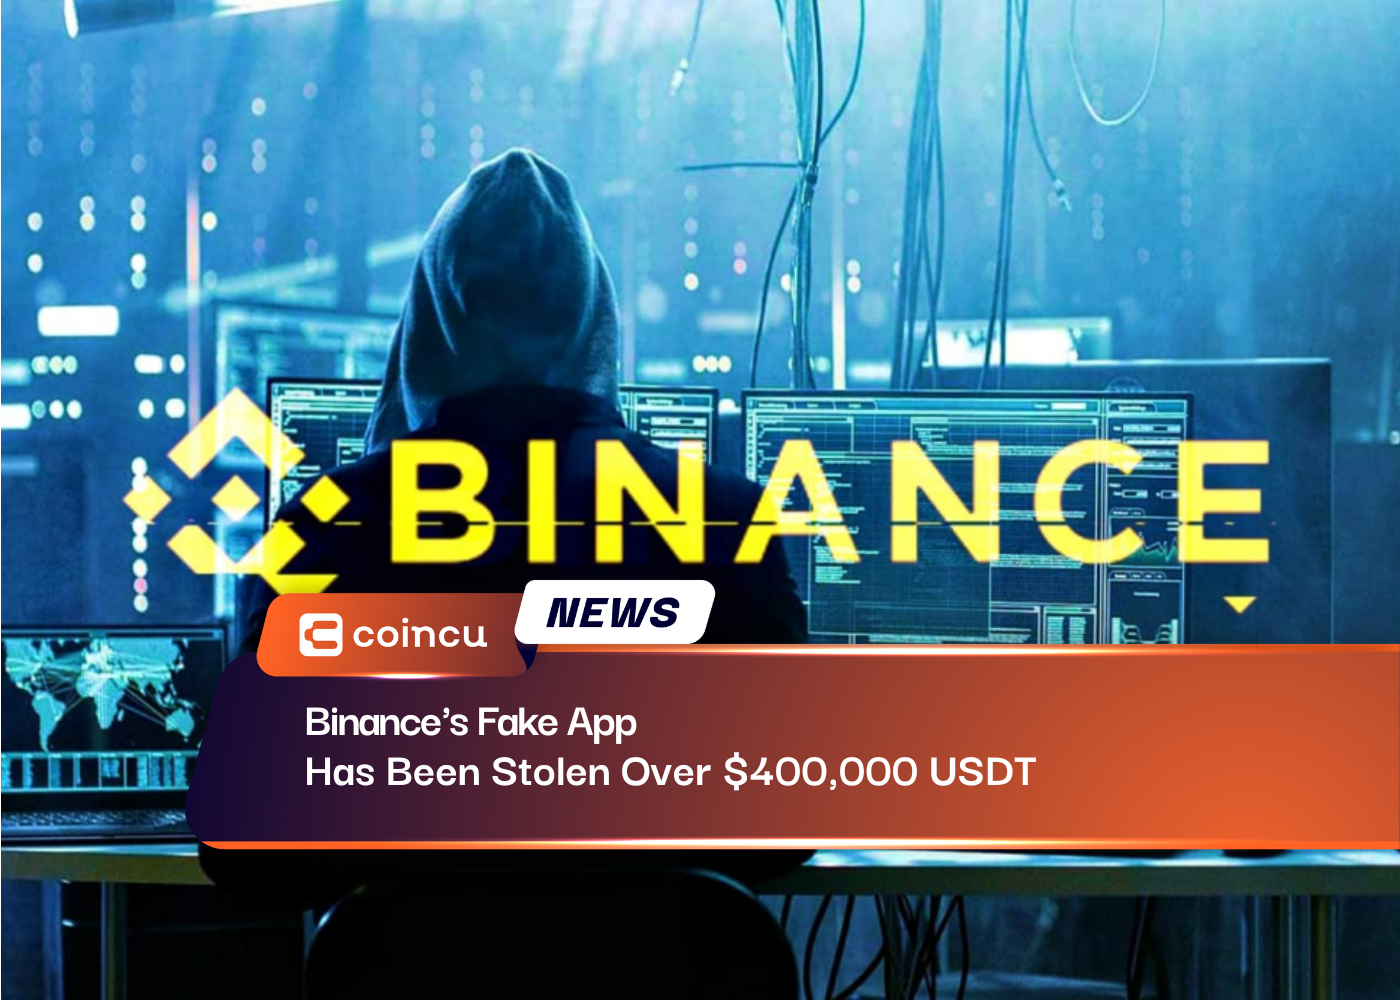 Binance's Fake App Has Been Stolen Over $400,000 USDT